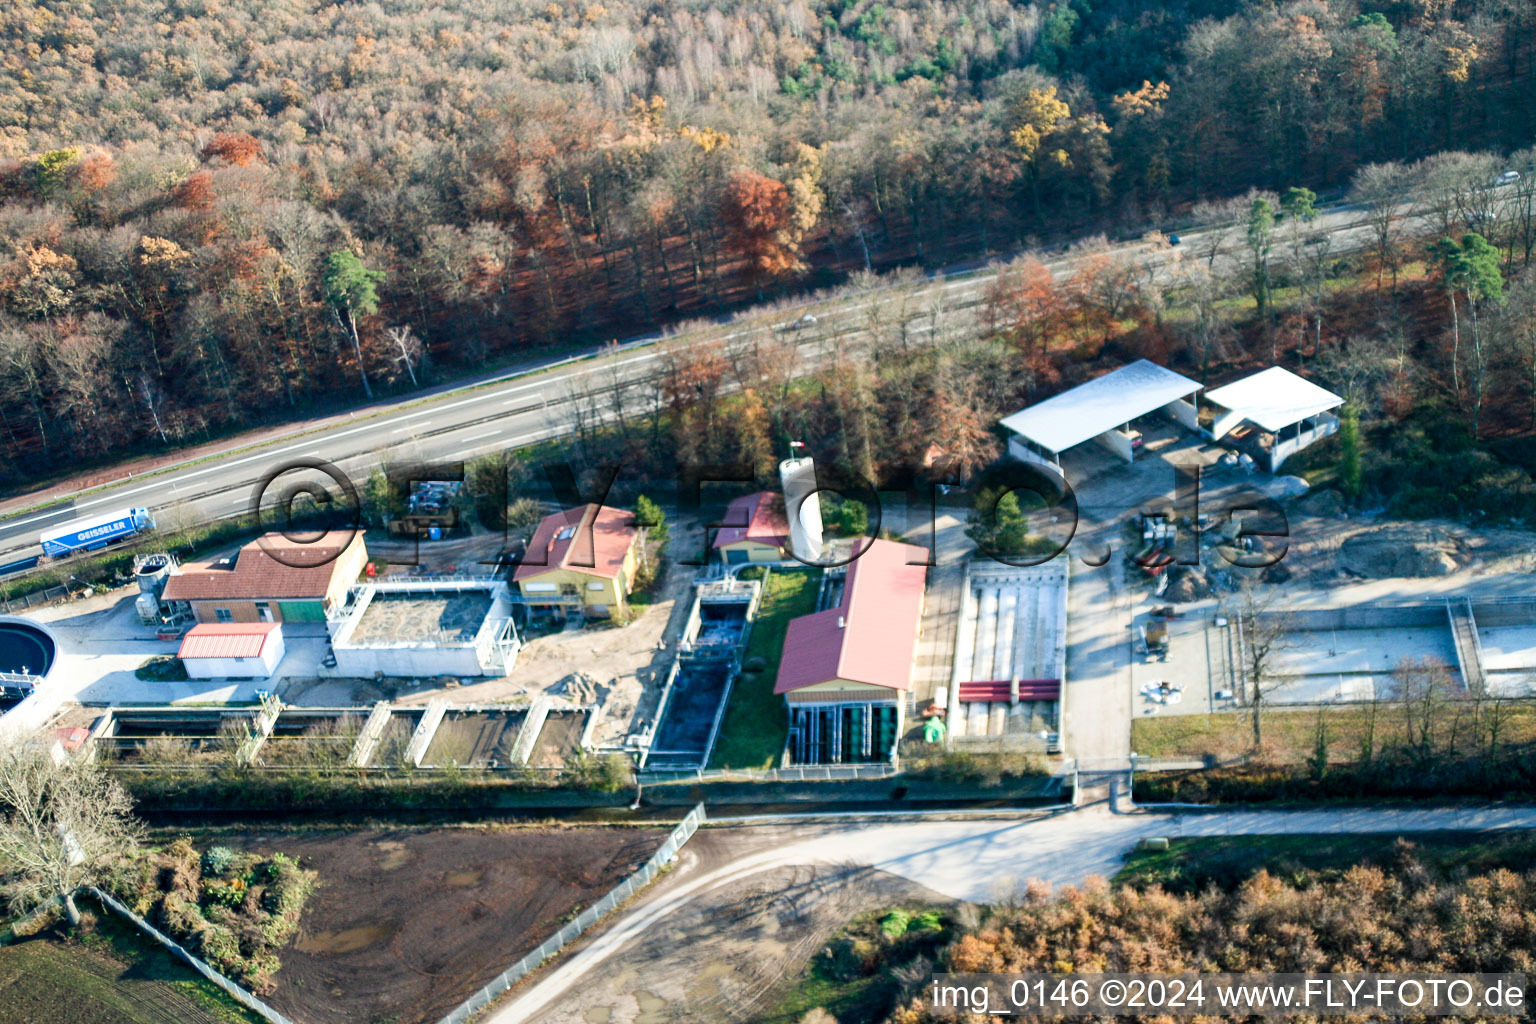 Vue aérienne de Réservoirs de traitement des eaux usées et étapes de nettoyage pour le traitement des eaux usées à Kandel dans le département Rhénanie-Palatinat, Allemagne